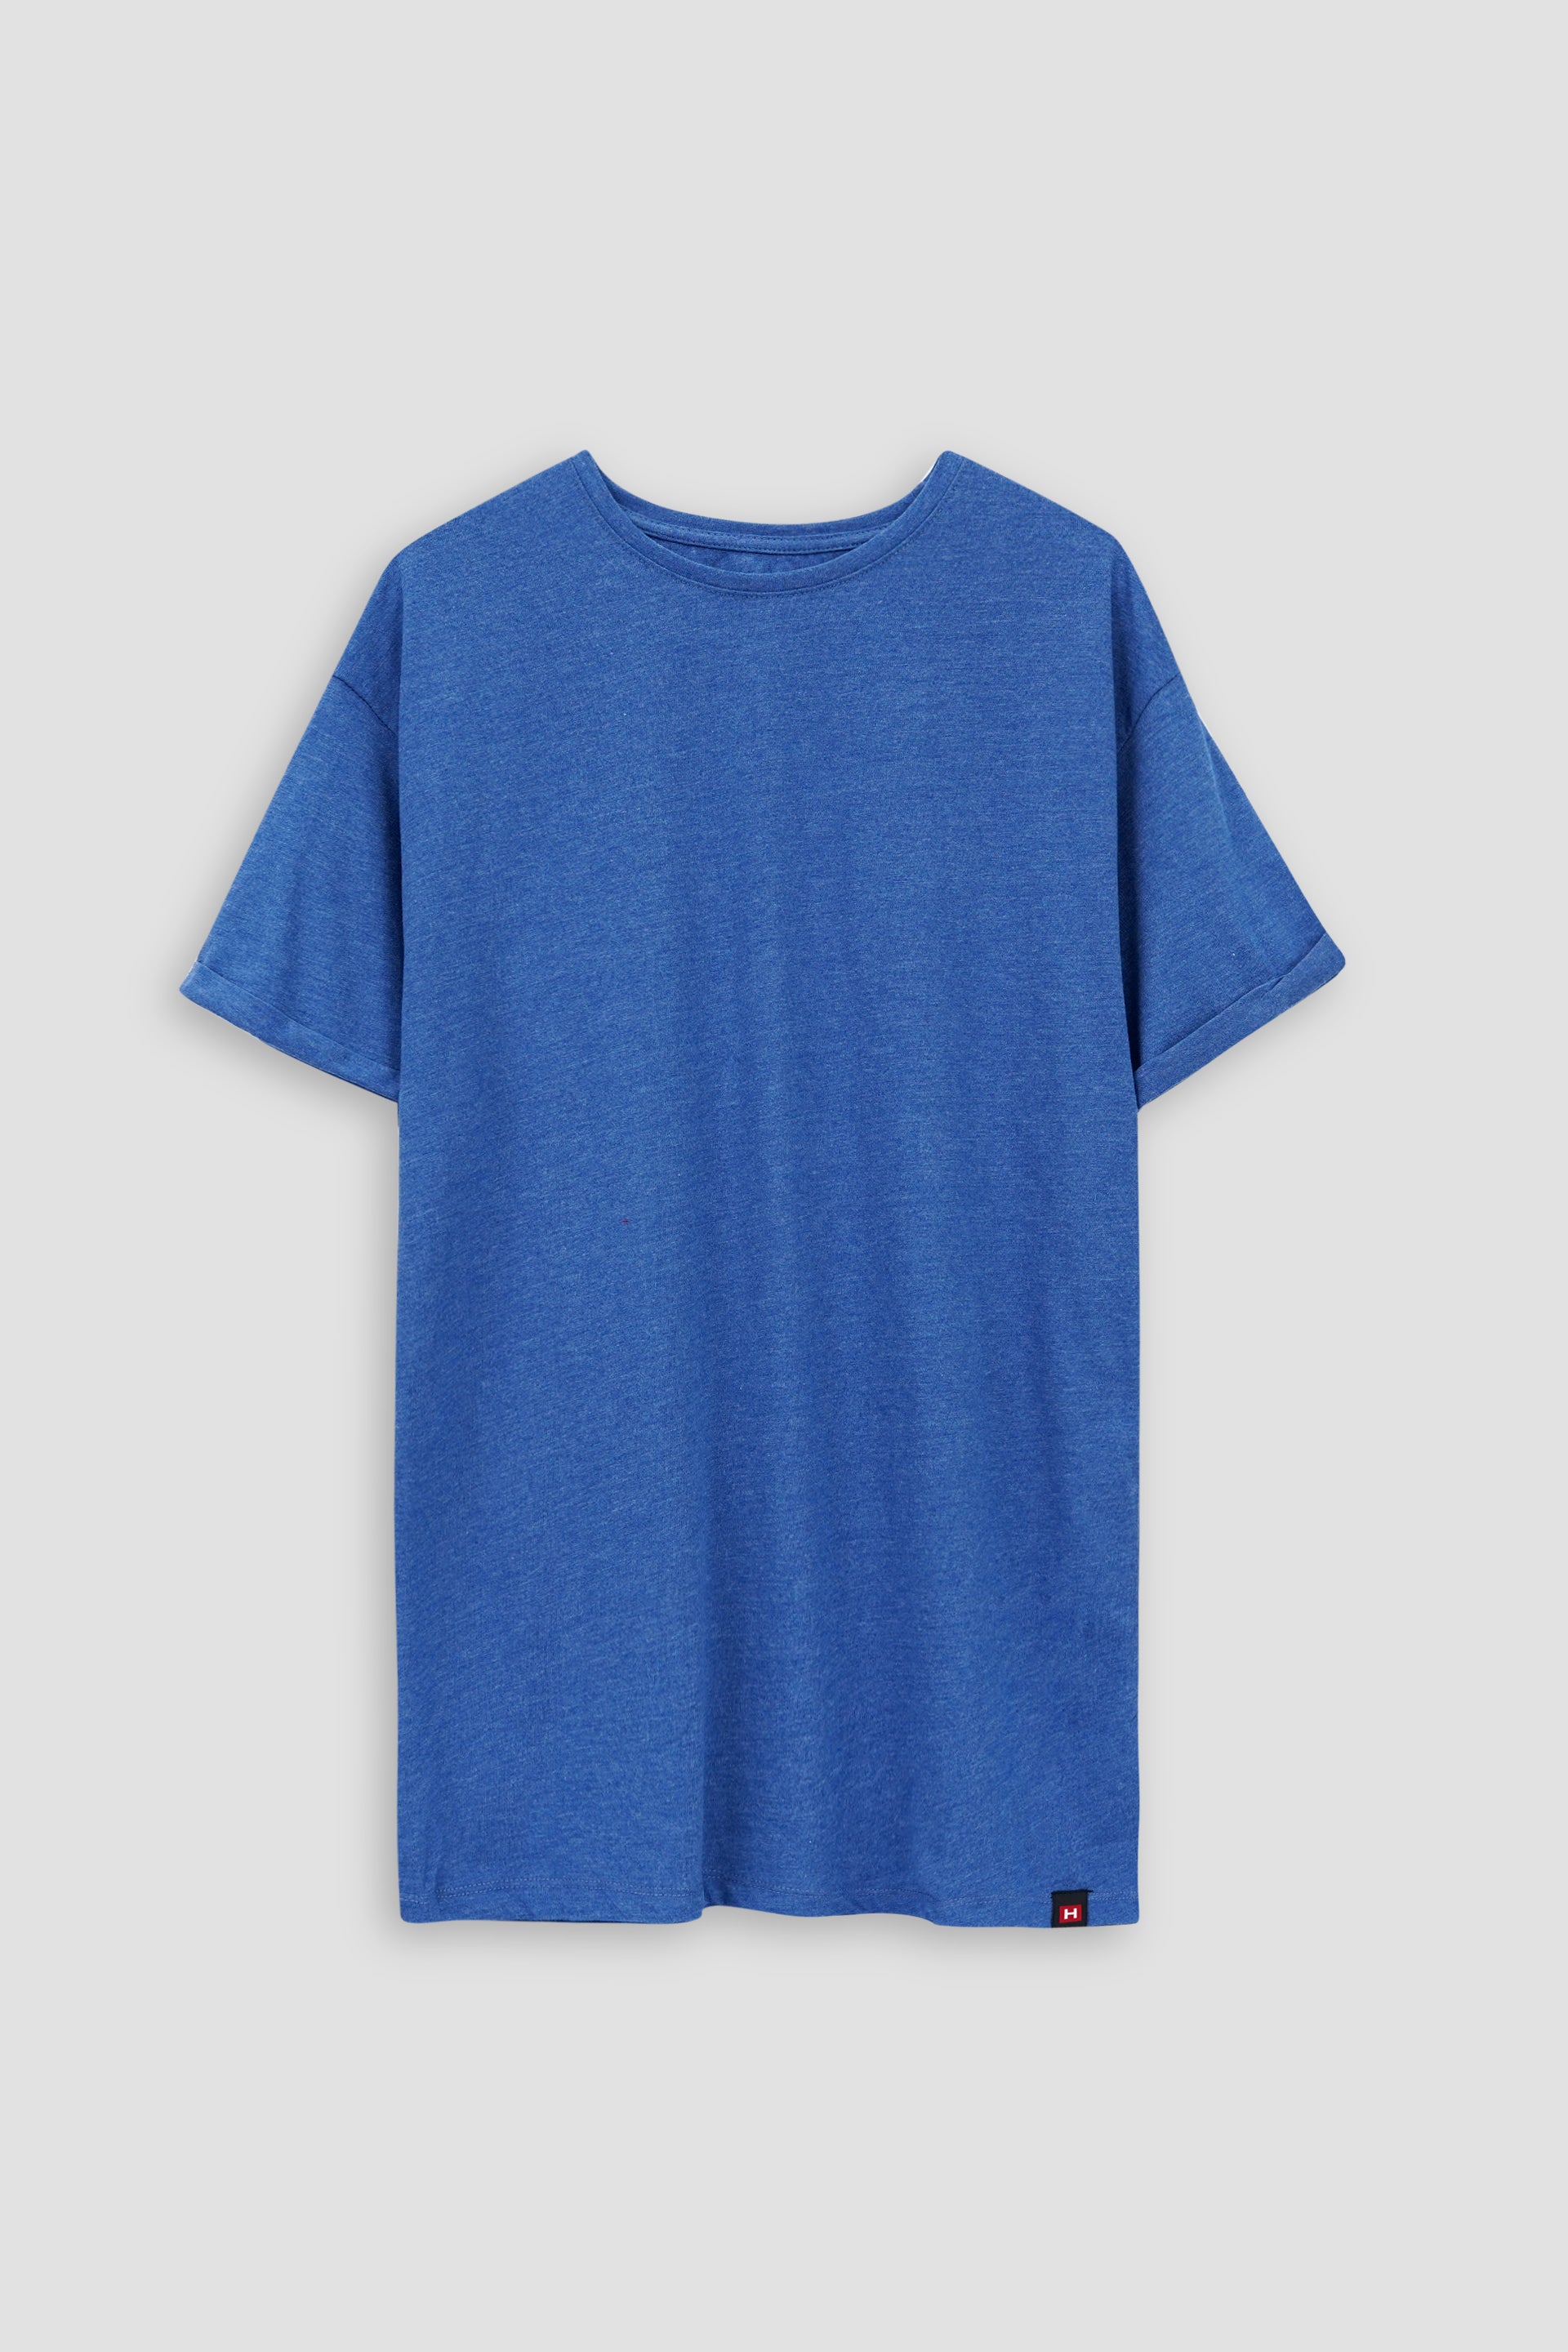 Plain Soft Cotton T-Shirt 001833